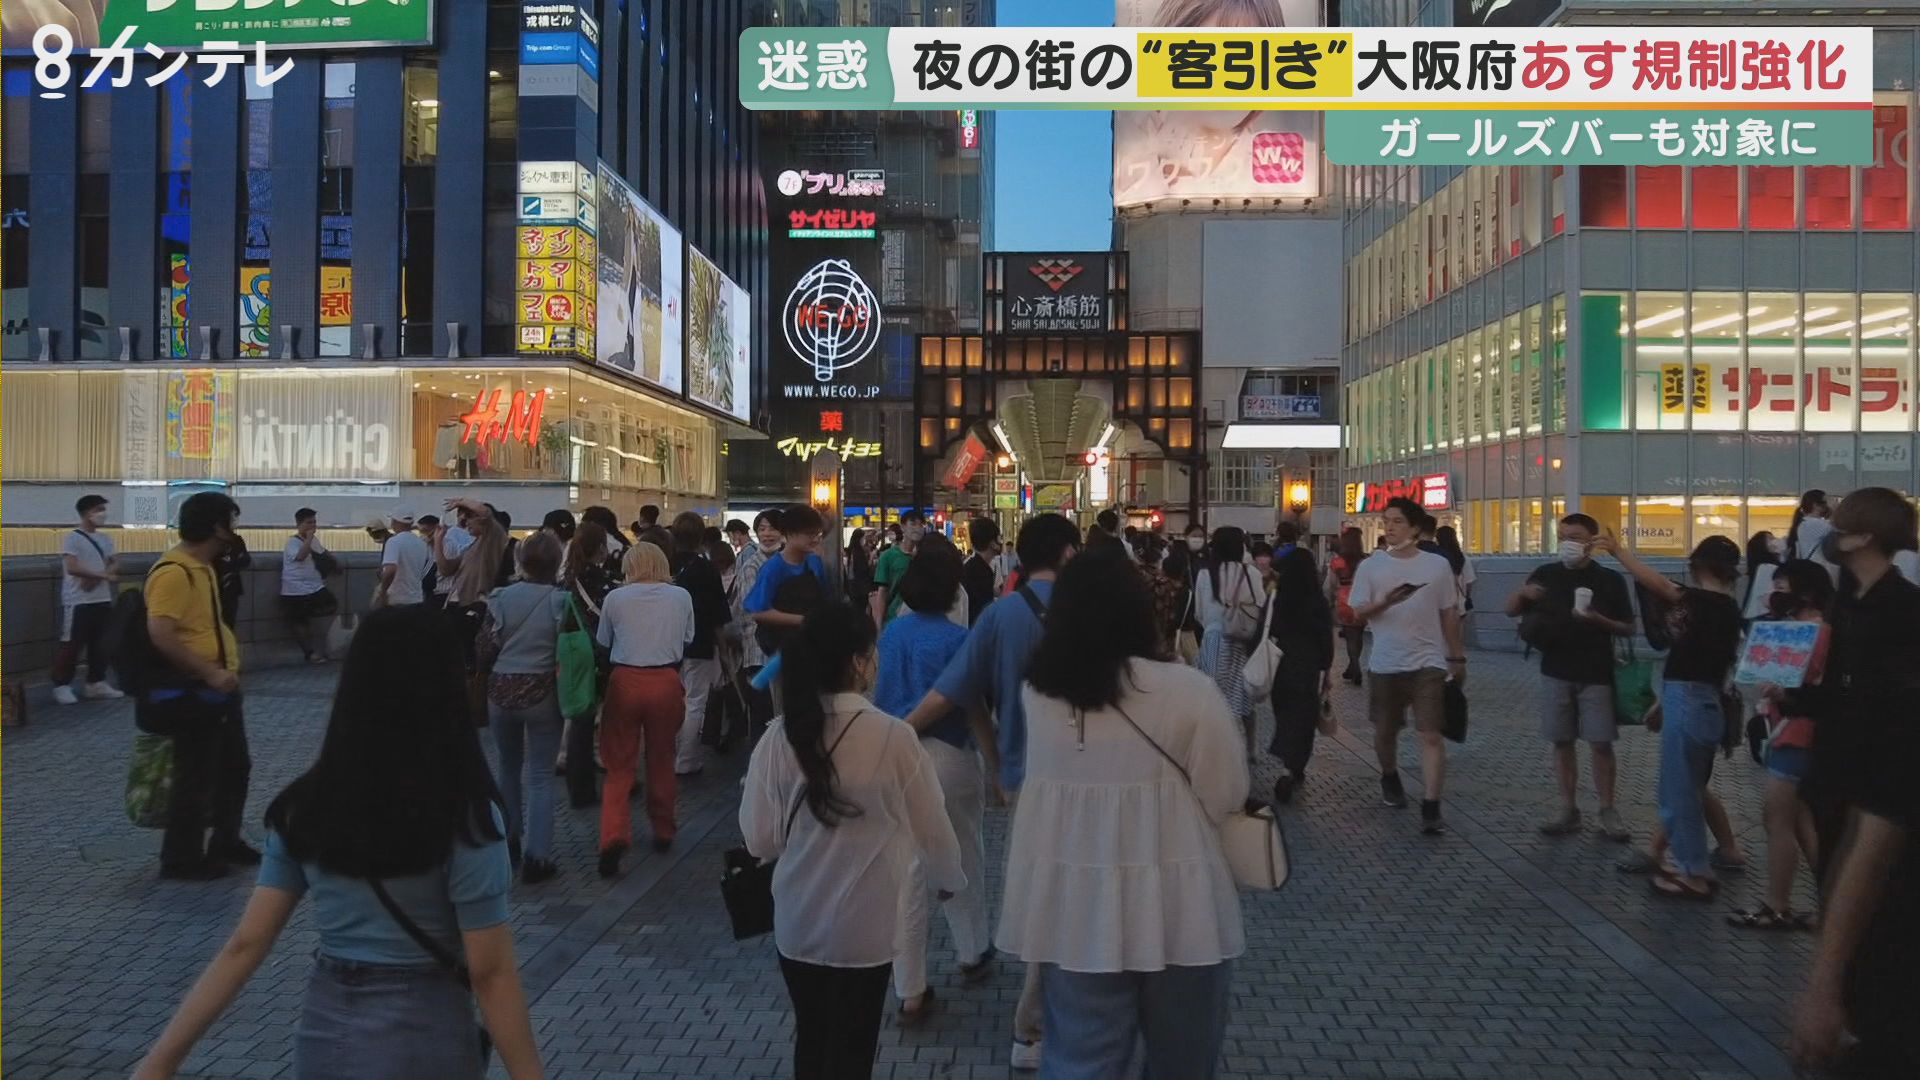 大阪の夜の「客引き」7月から減少？　府が迷惑防止条例の改正で規制強化も…　警察は名称変更での“抜け道”を警戒